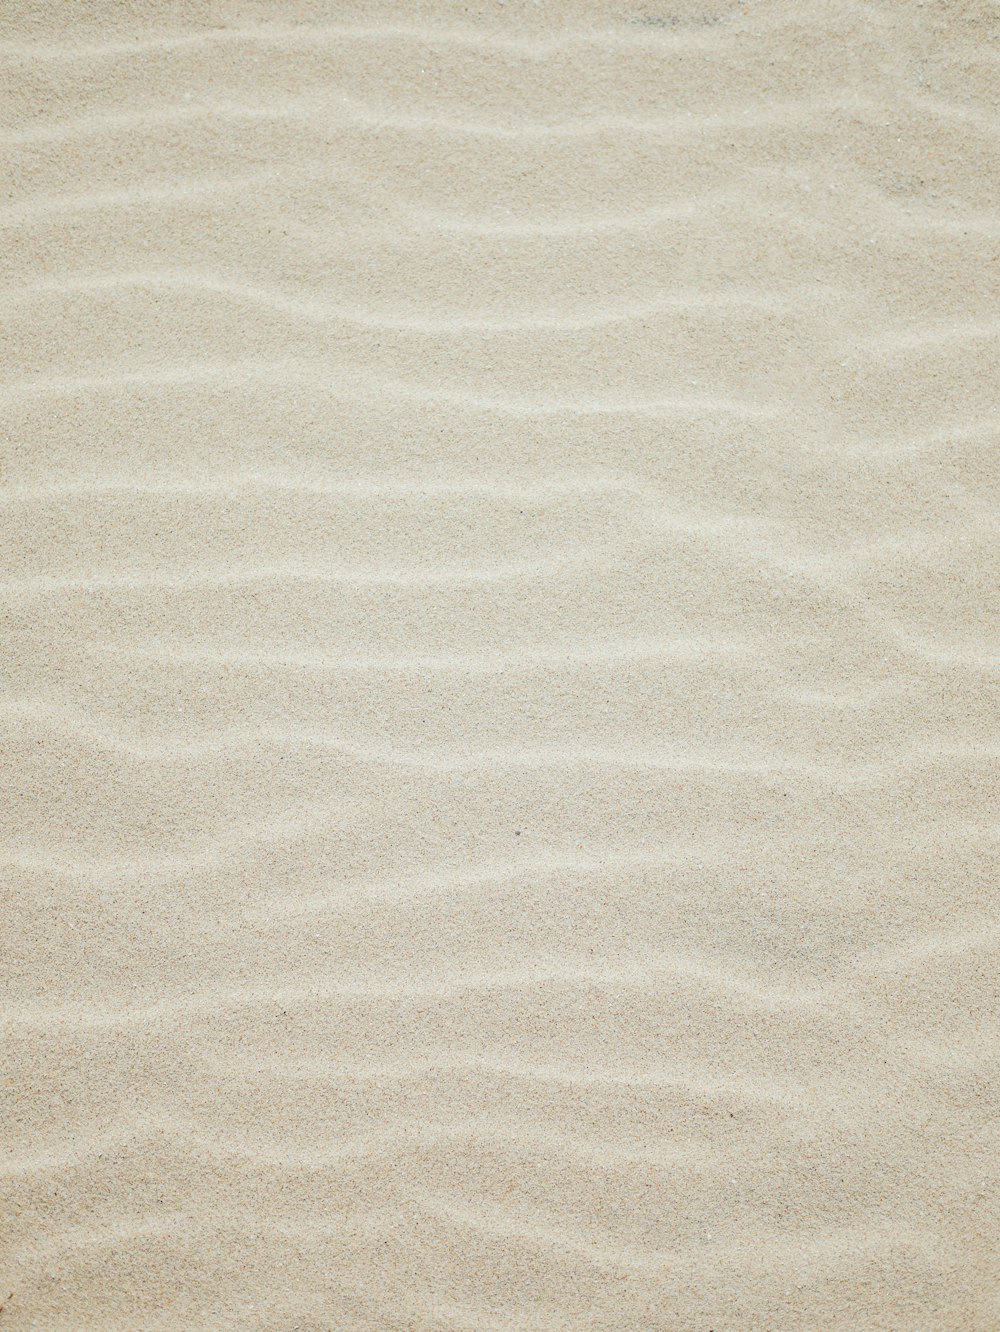 white beach sand texture